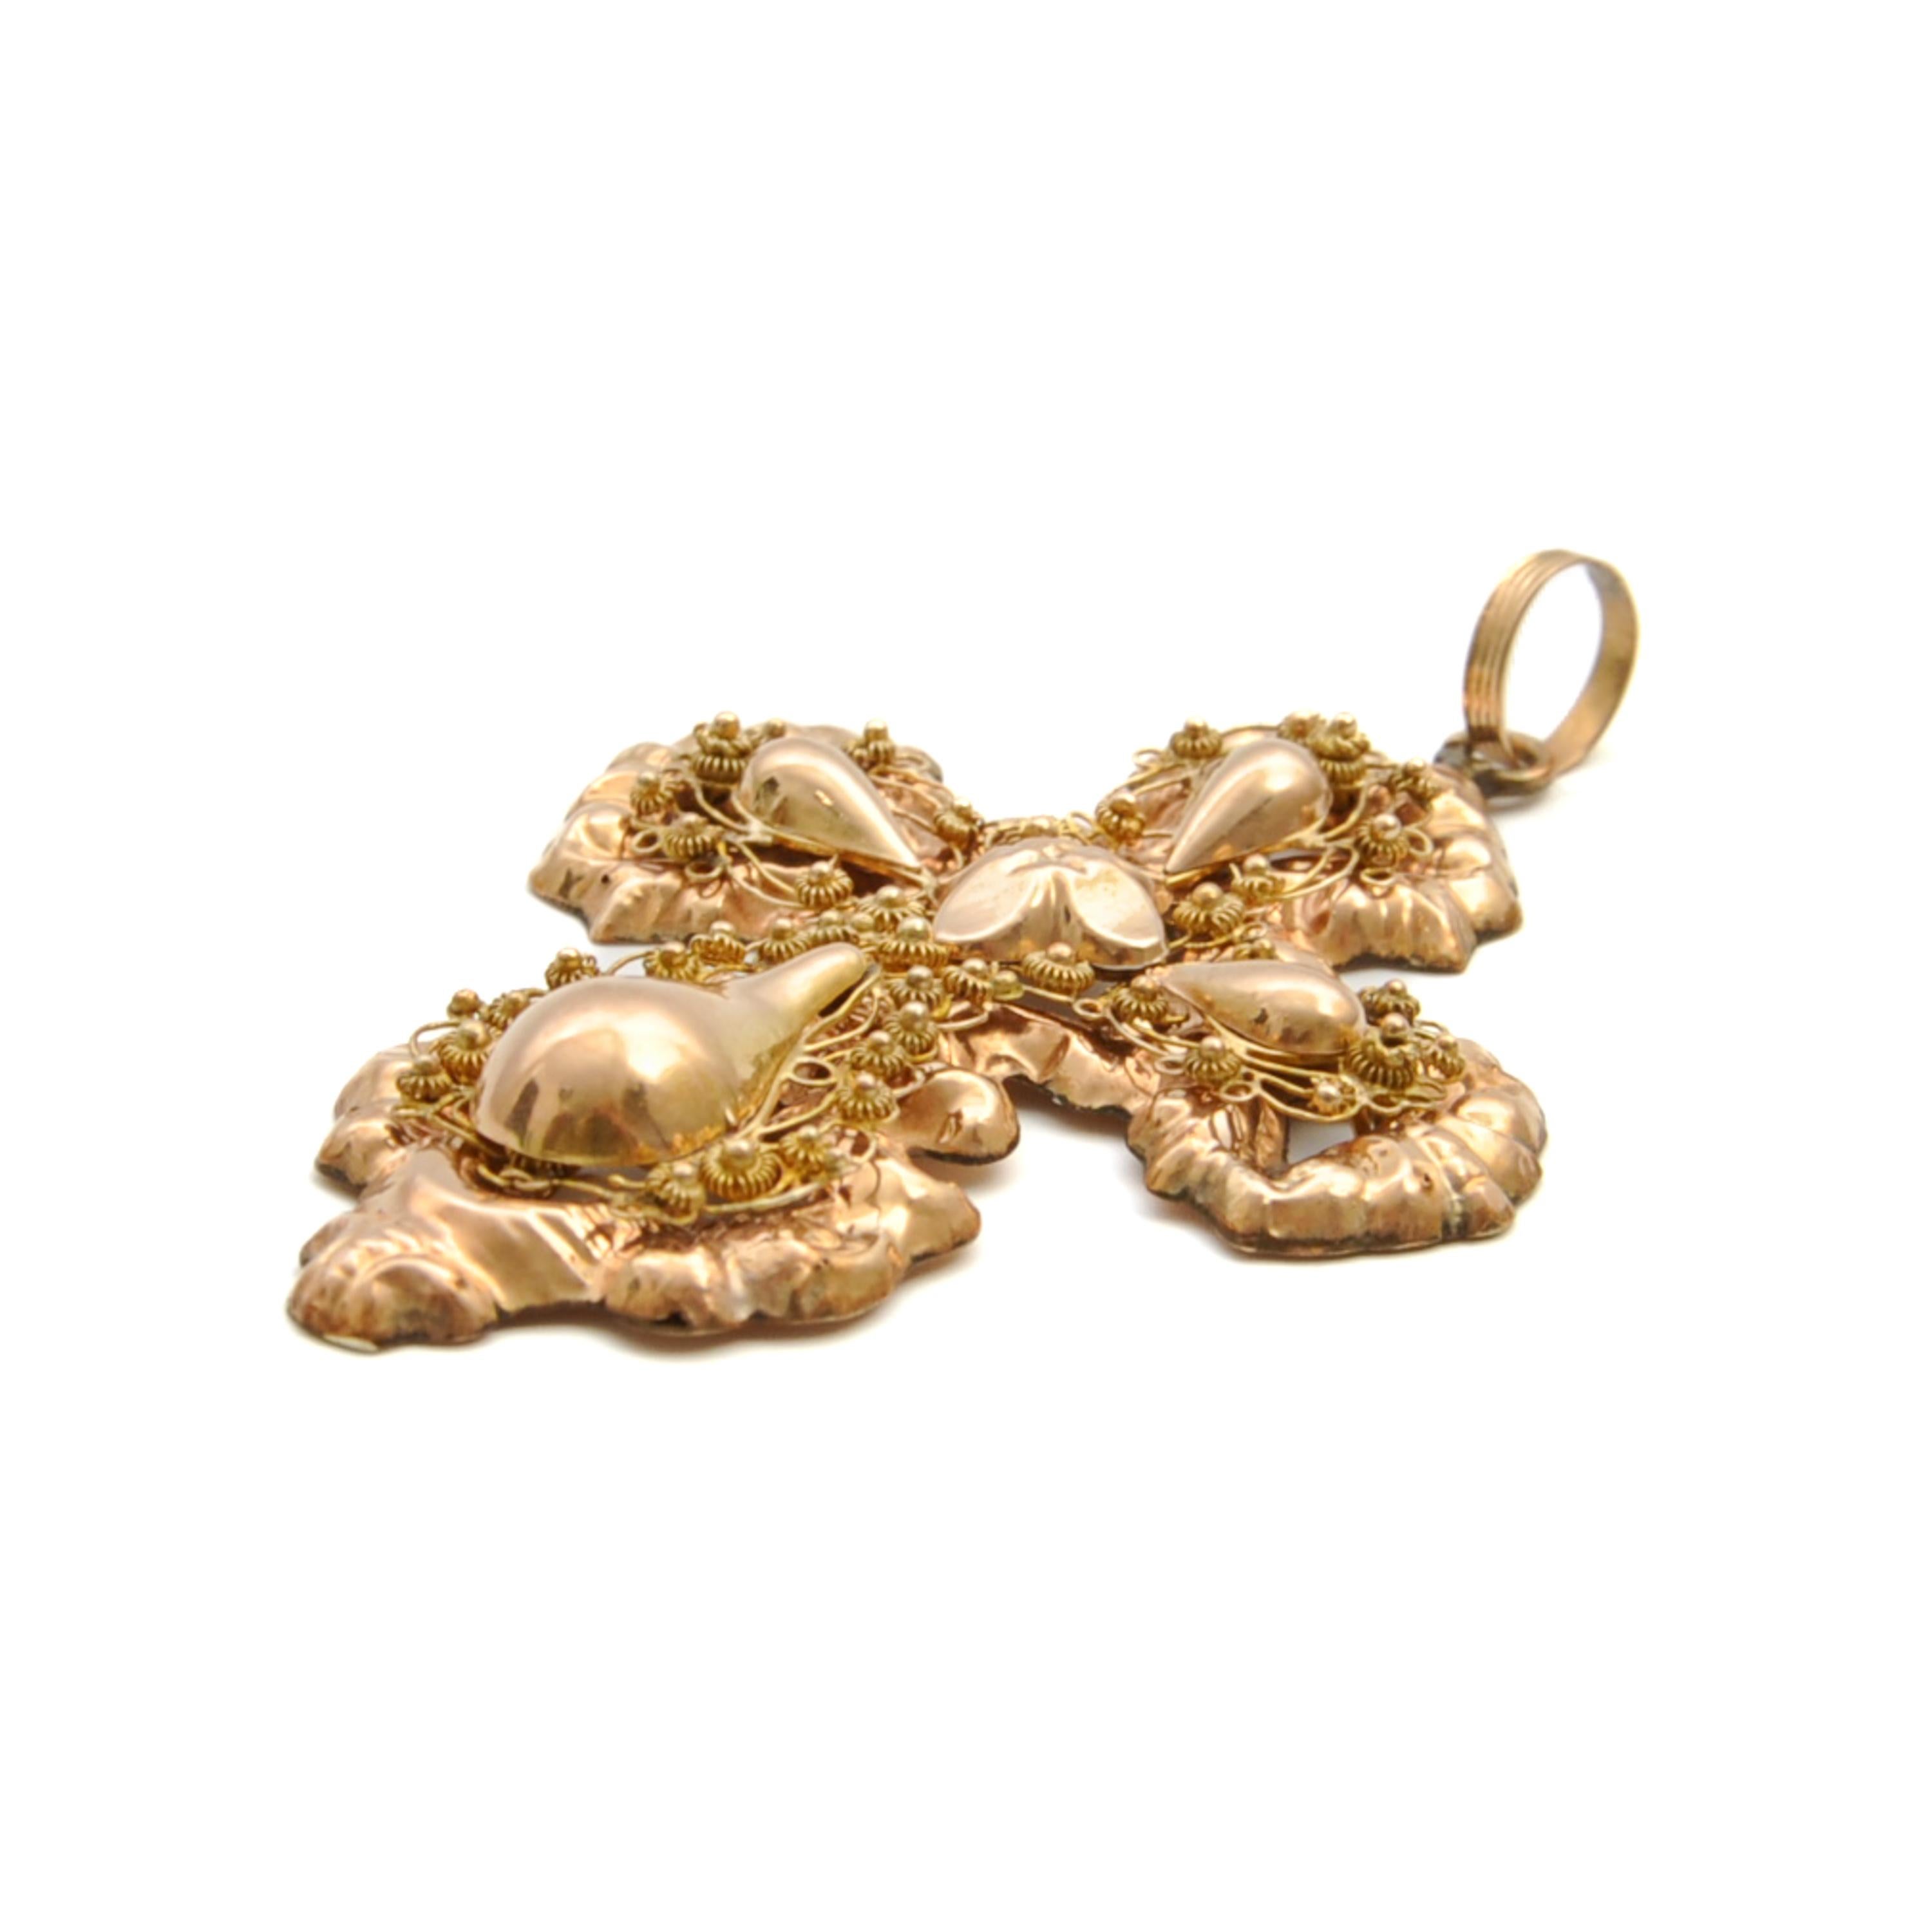 Women's or Men's Antique 19th Century 14K Gold Filigree Cross Pendant For Sale